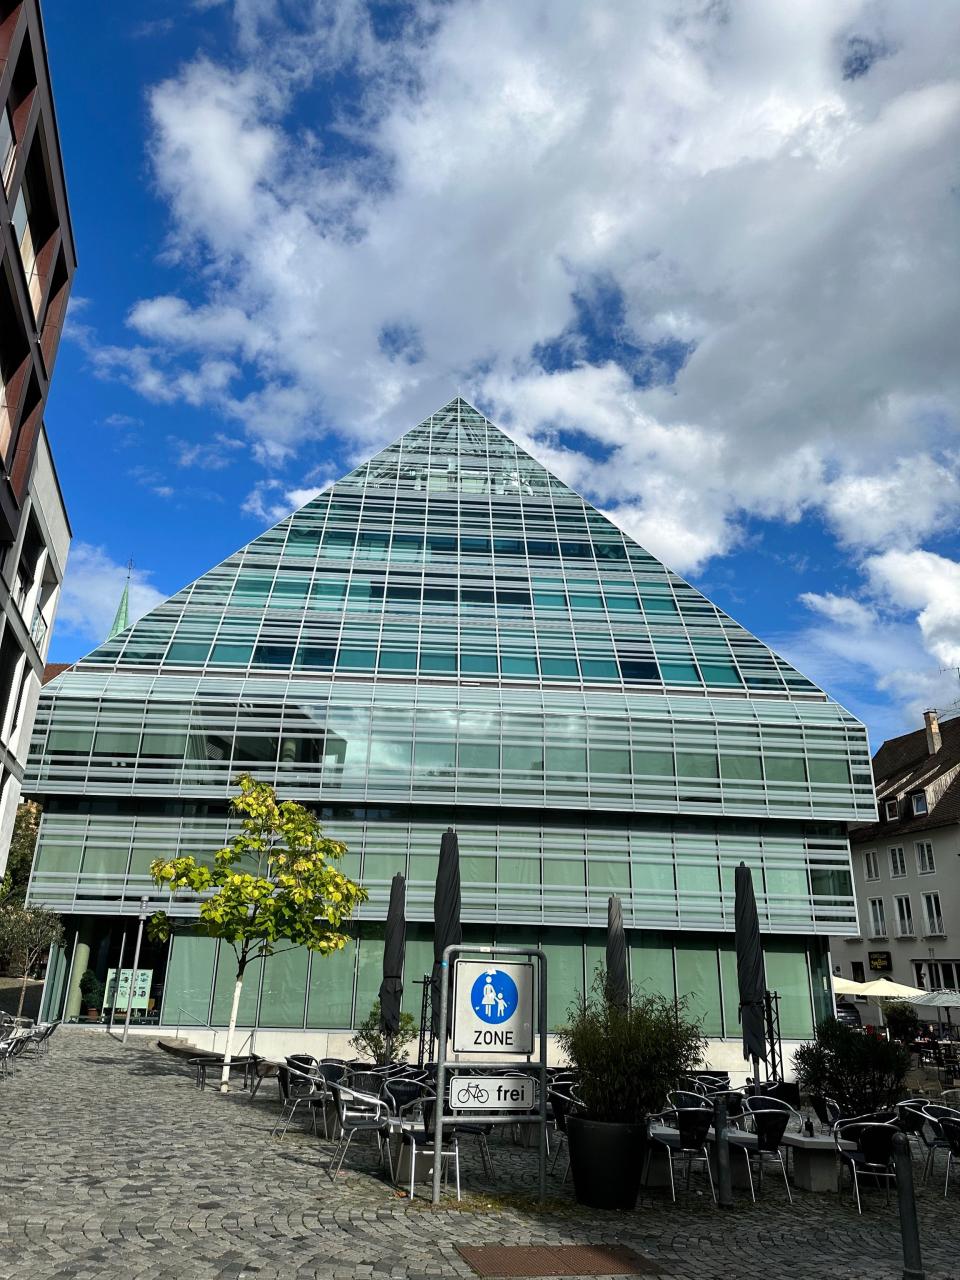 Bücherei Ulm mit dem berühmten Pyramiden-Dach